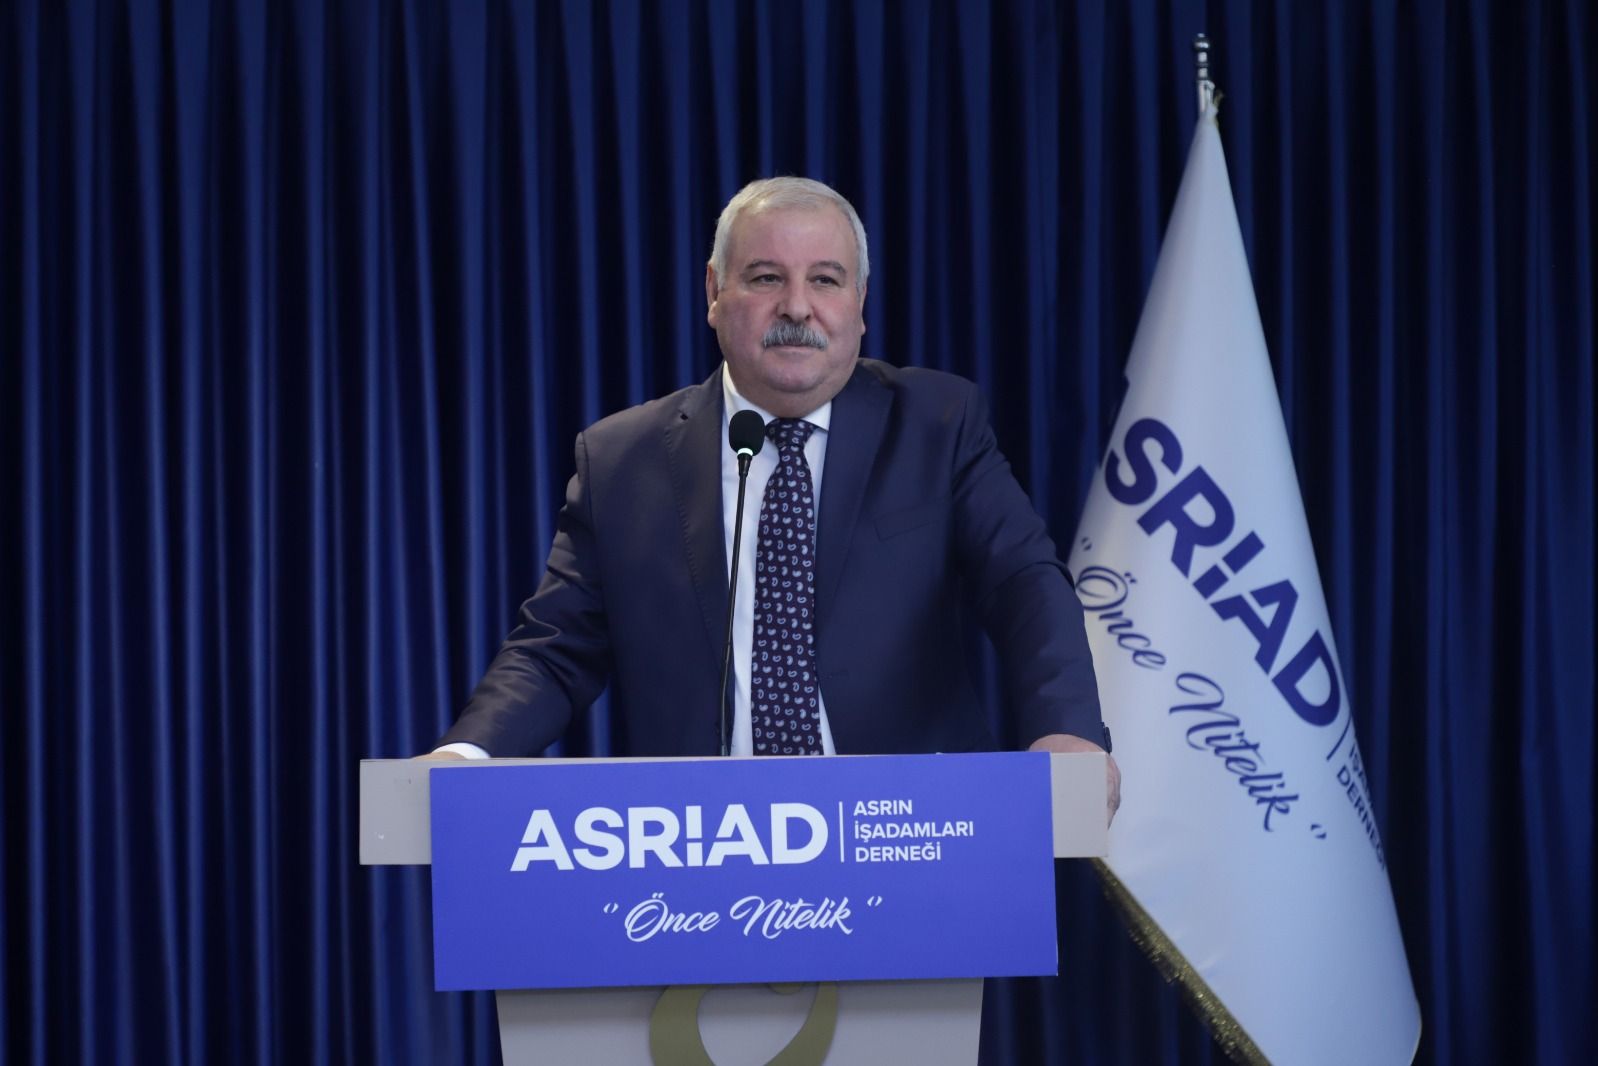 ASRİAD Başkanı Danışman, Merkez Bankası'nın faiz kararını değerlendirdi